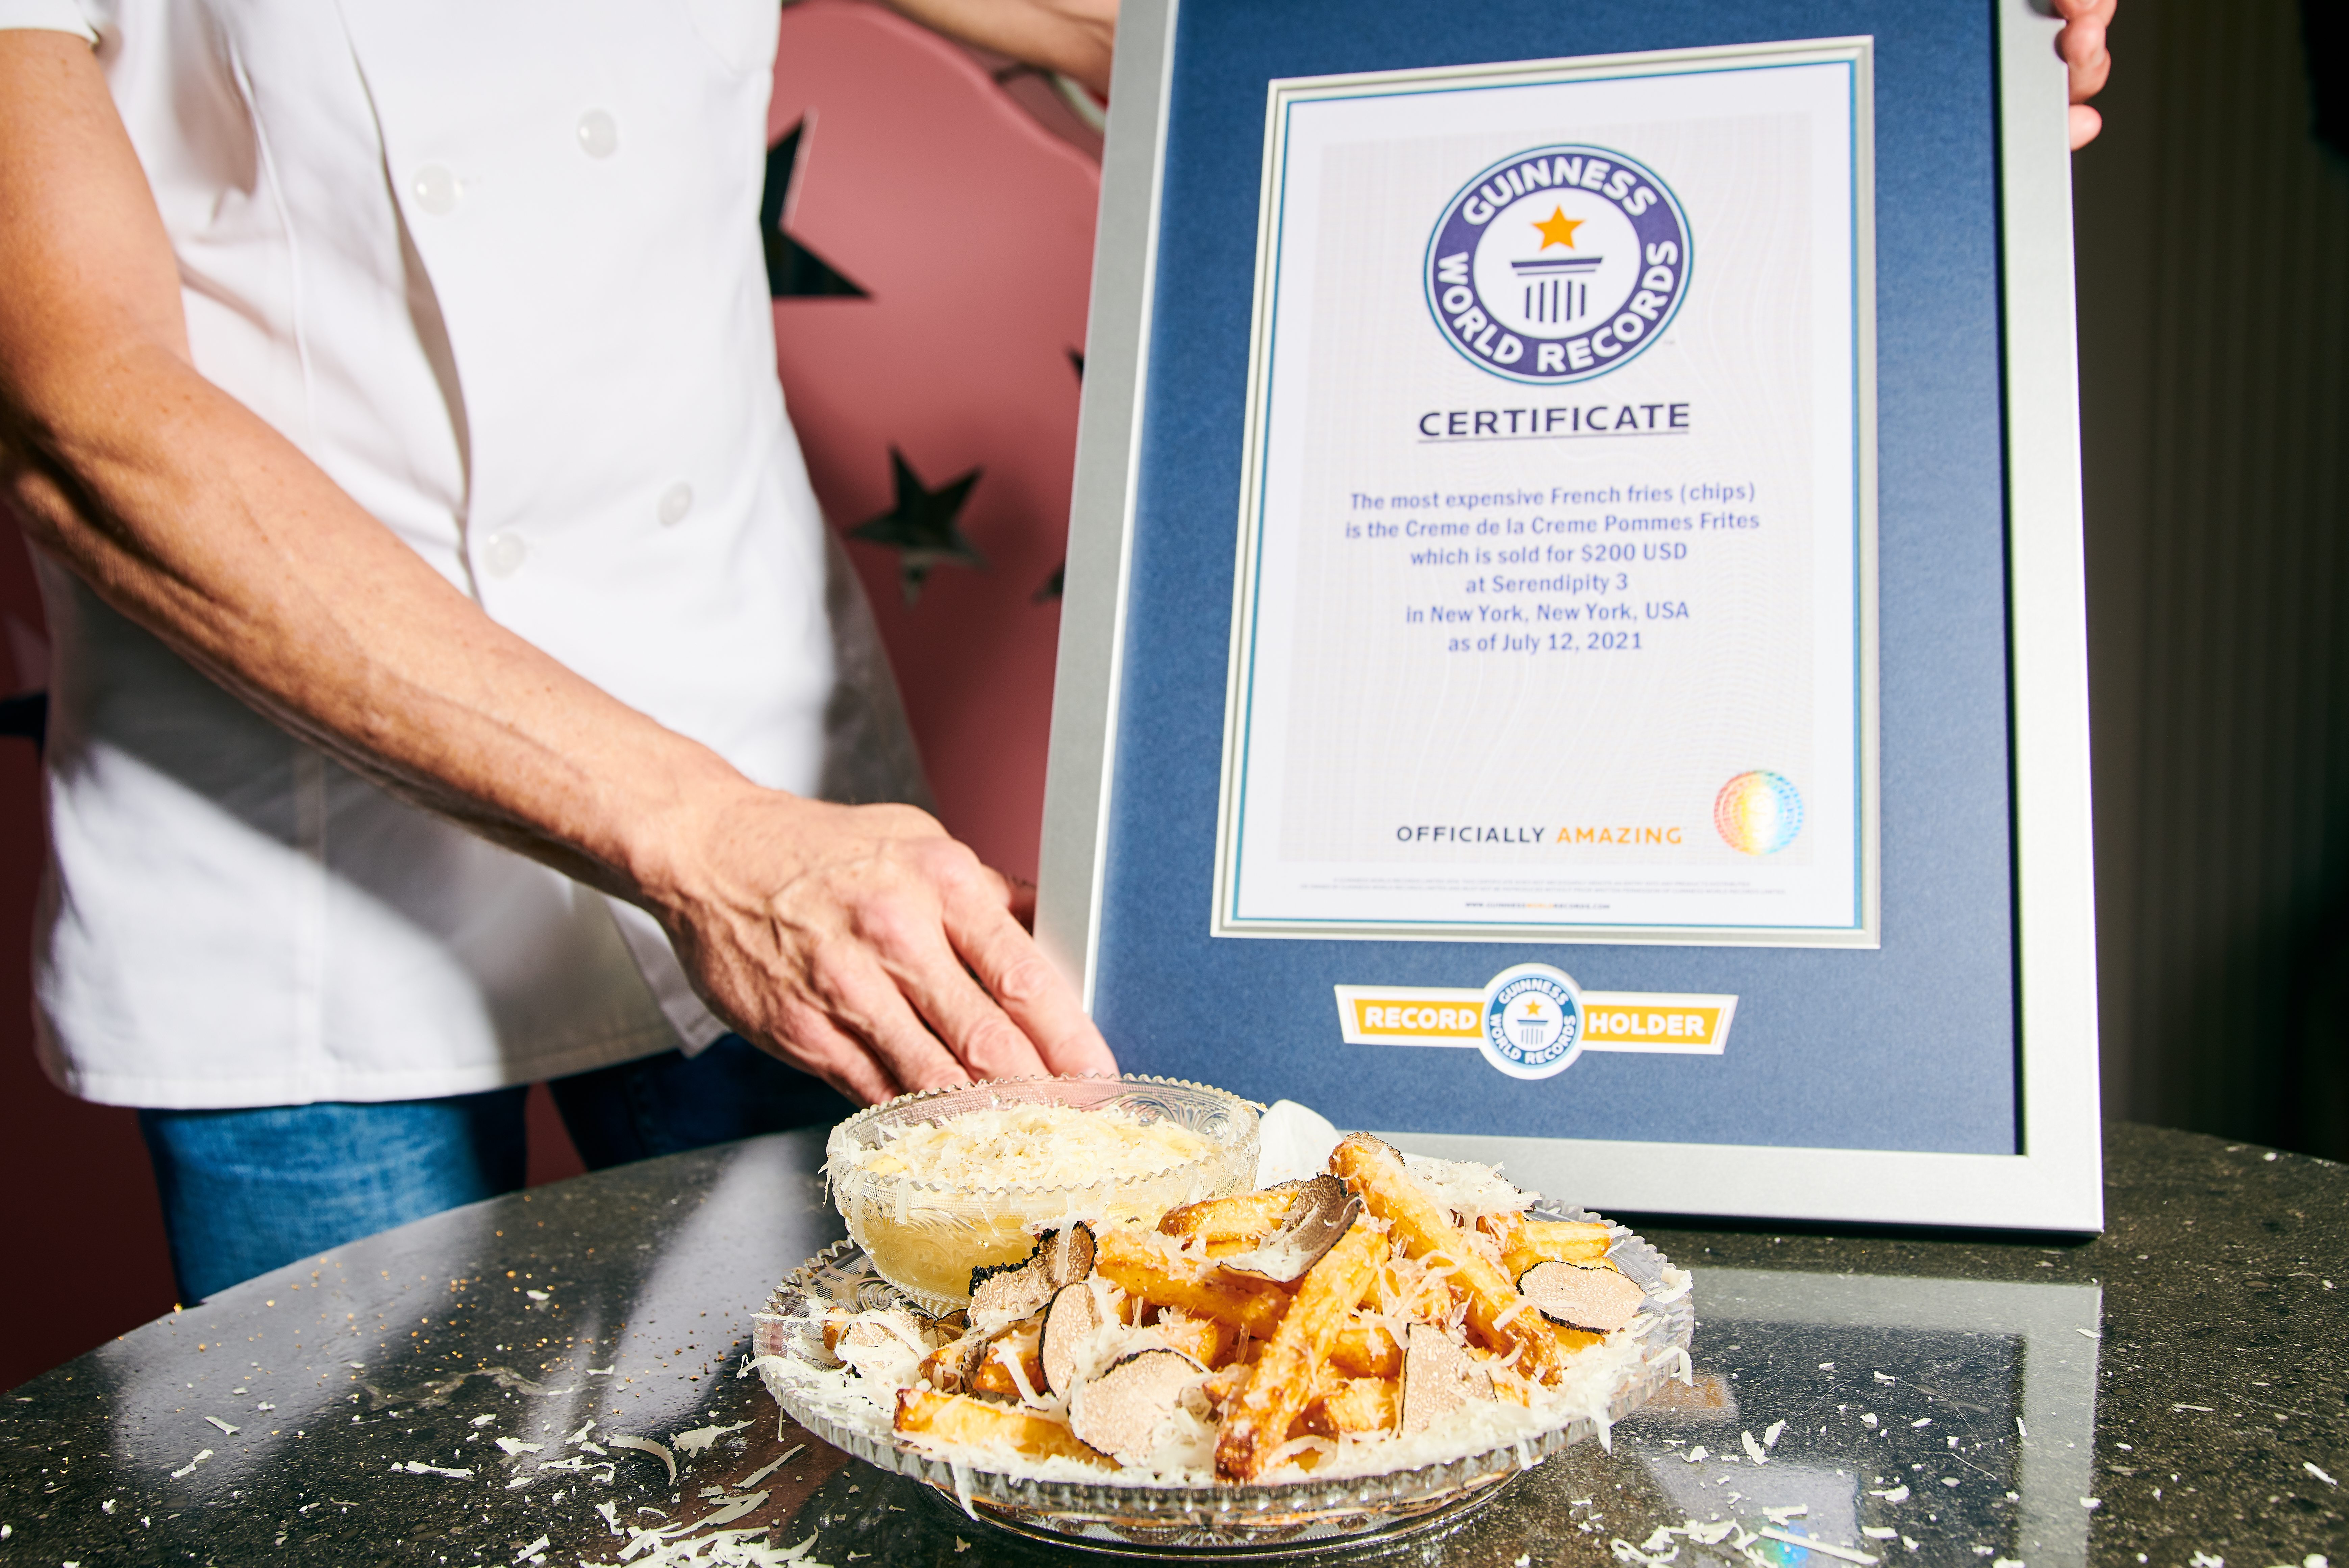 Serendipity 3’s Crème de la Crème Pommes Frites own a Guinness World Record.